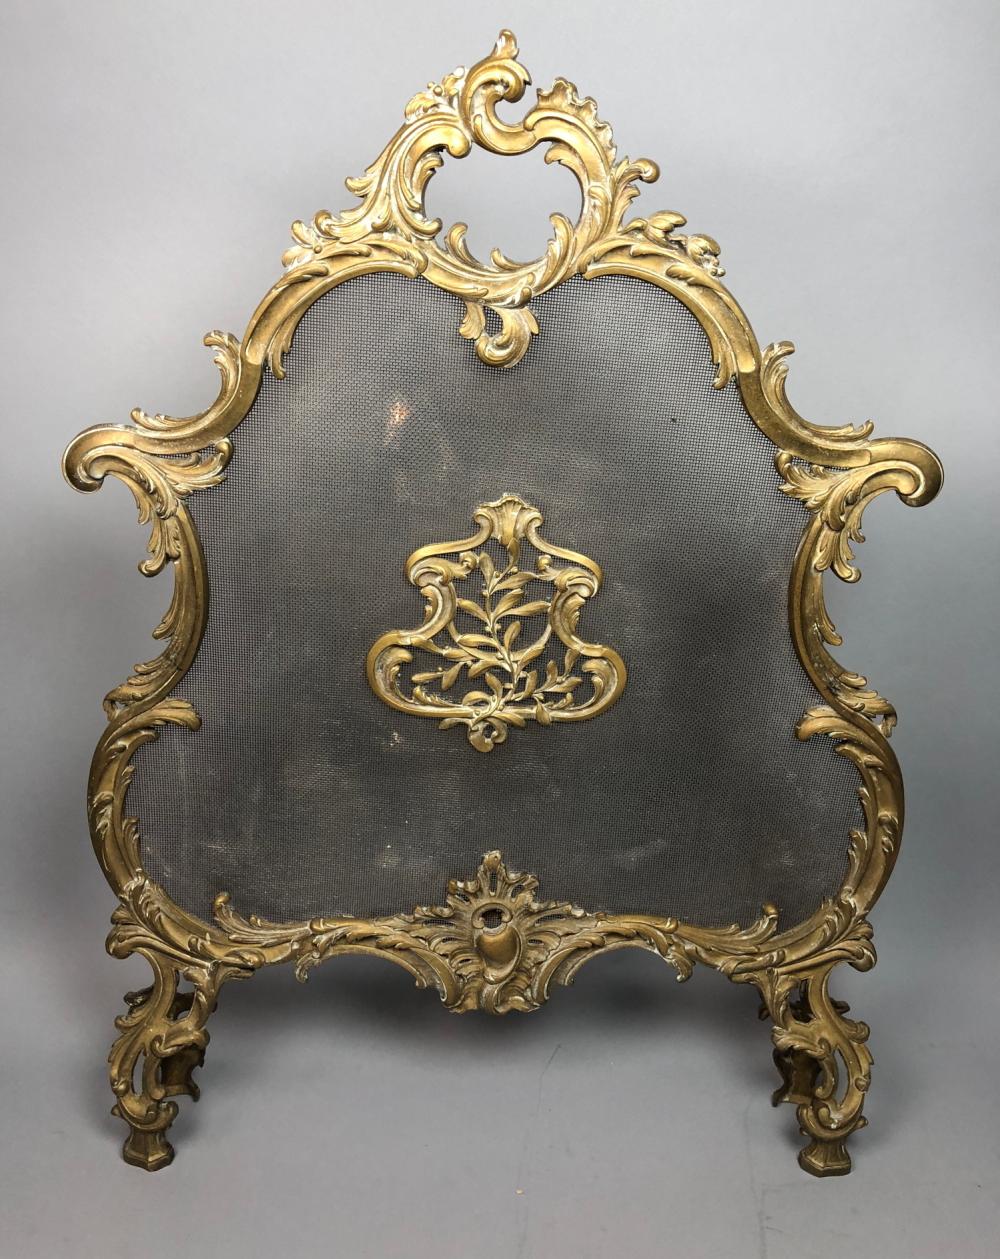 antique decorative brass fire screens fireplace 193 c ace423ea73